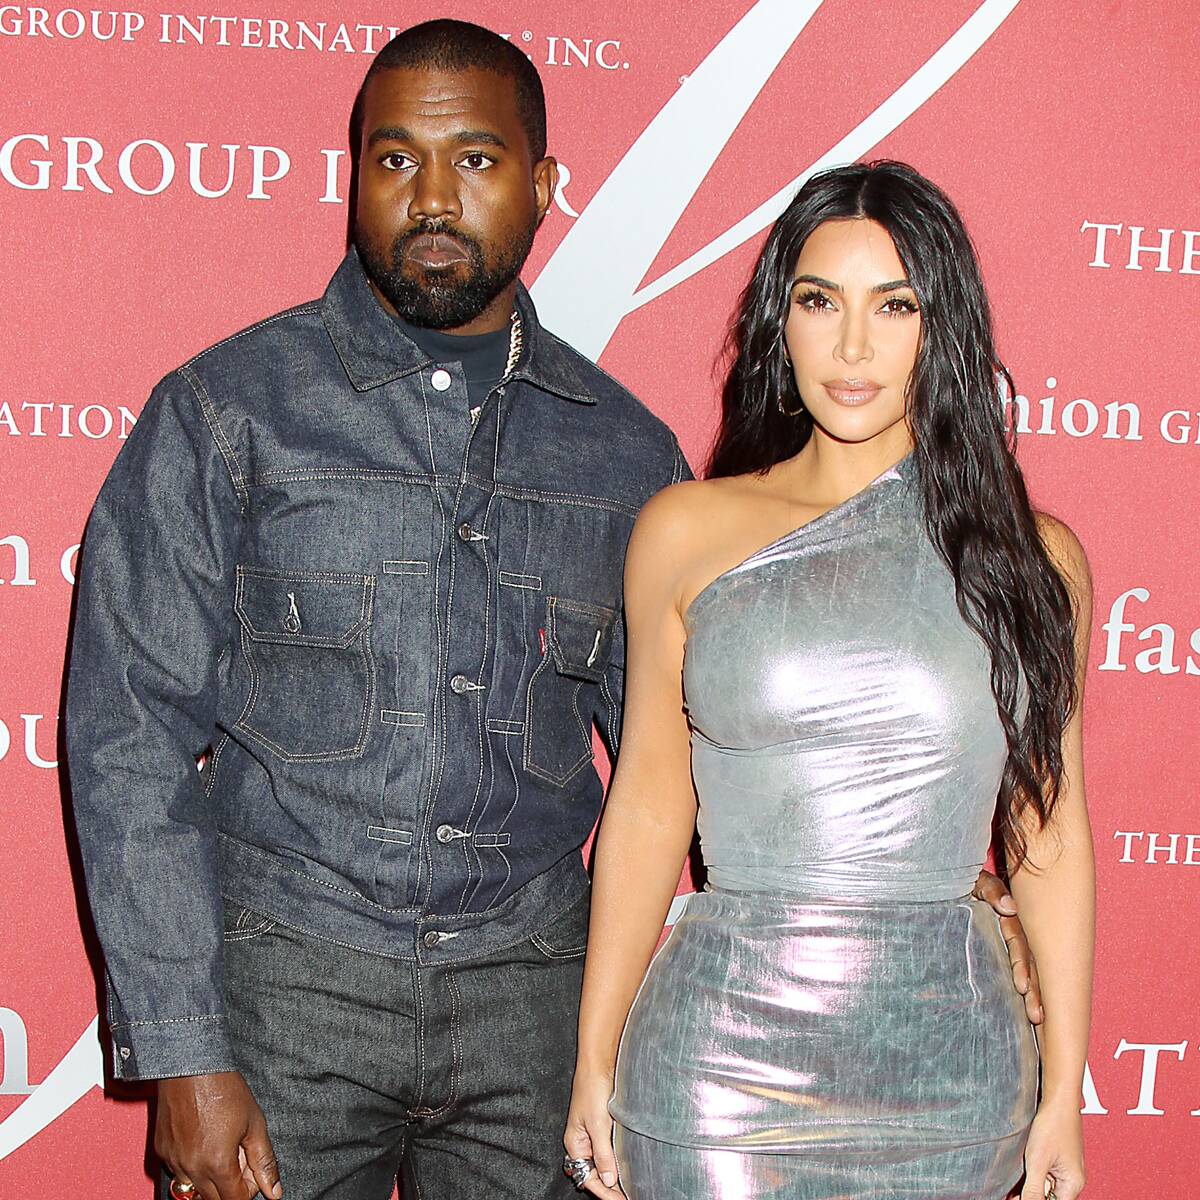 Kim Kardashian’s Thoughts on Dating Revealed After She Divorces Kanye West